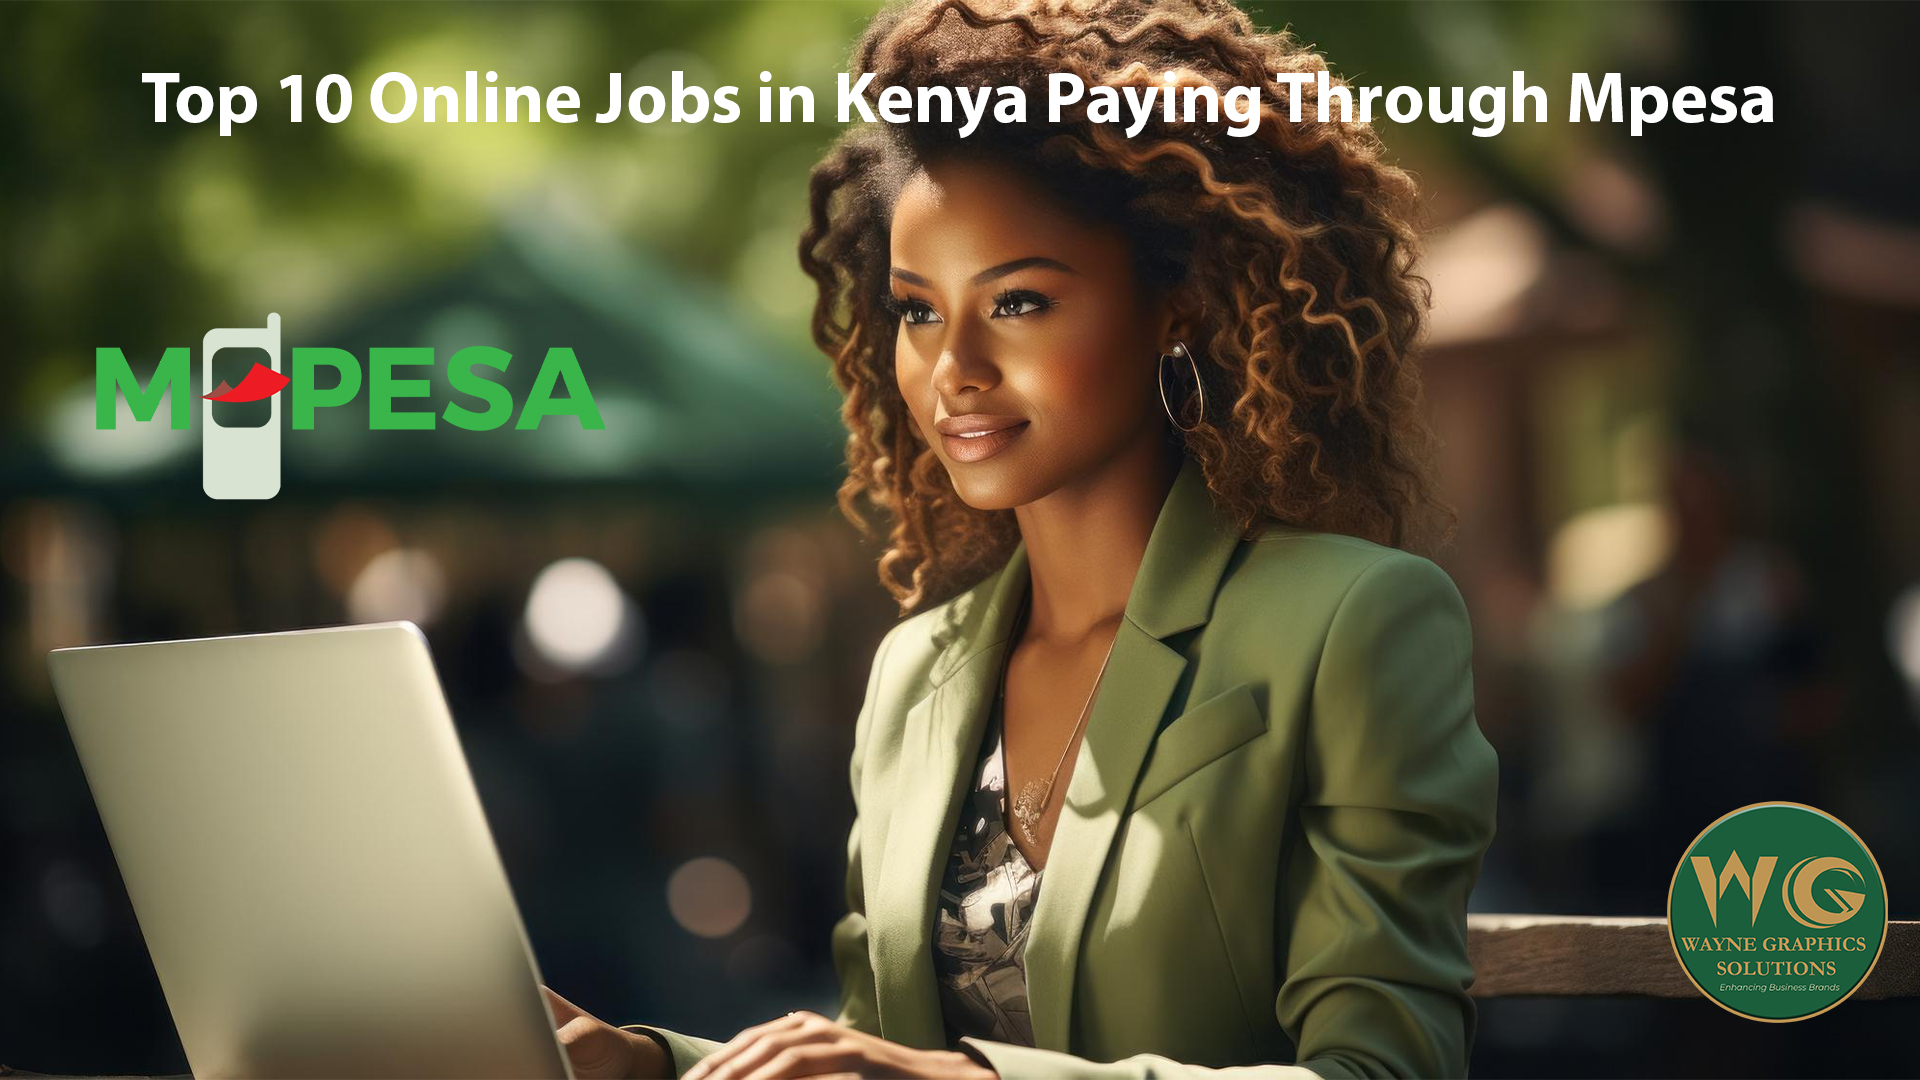 Top 10 Online Jobs in Kenya Paying Through Mpesa